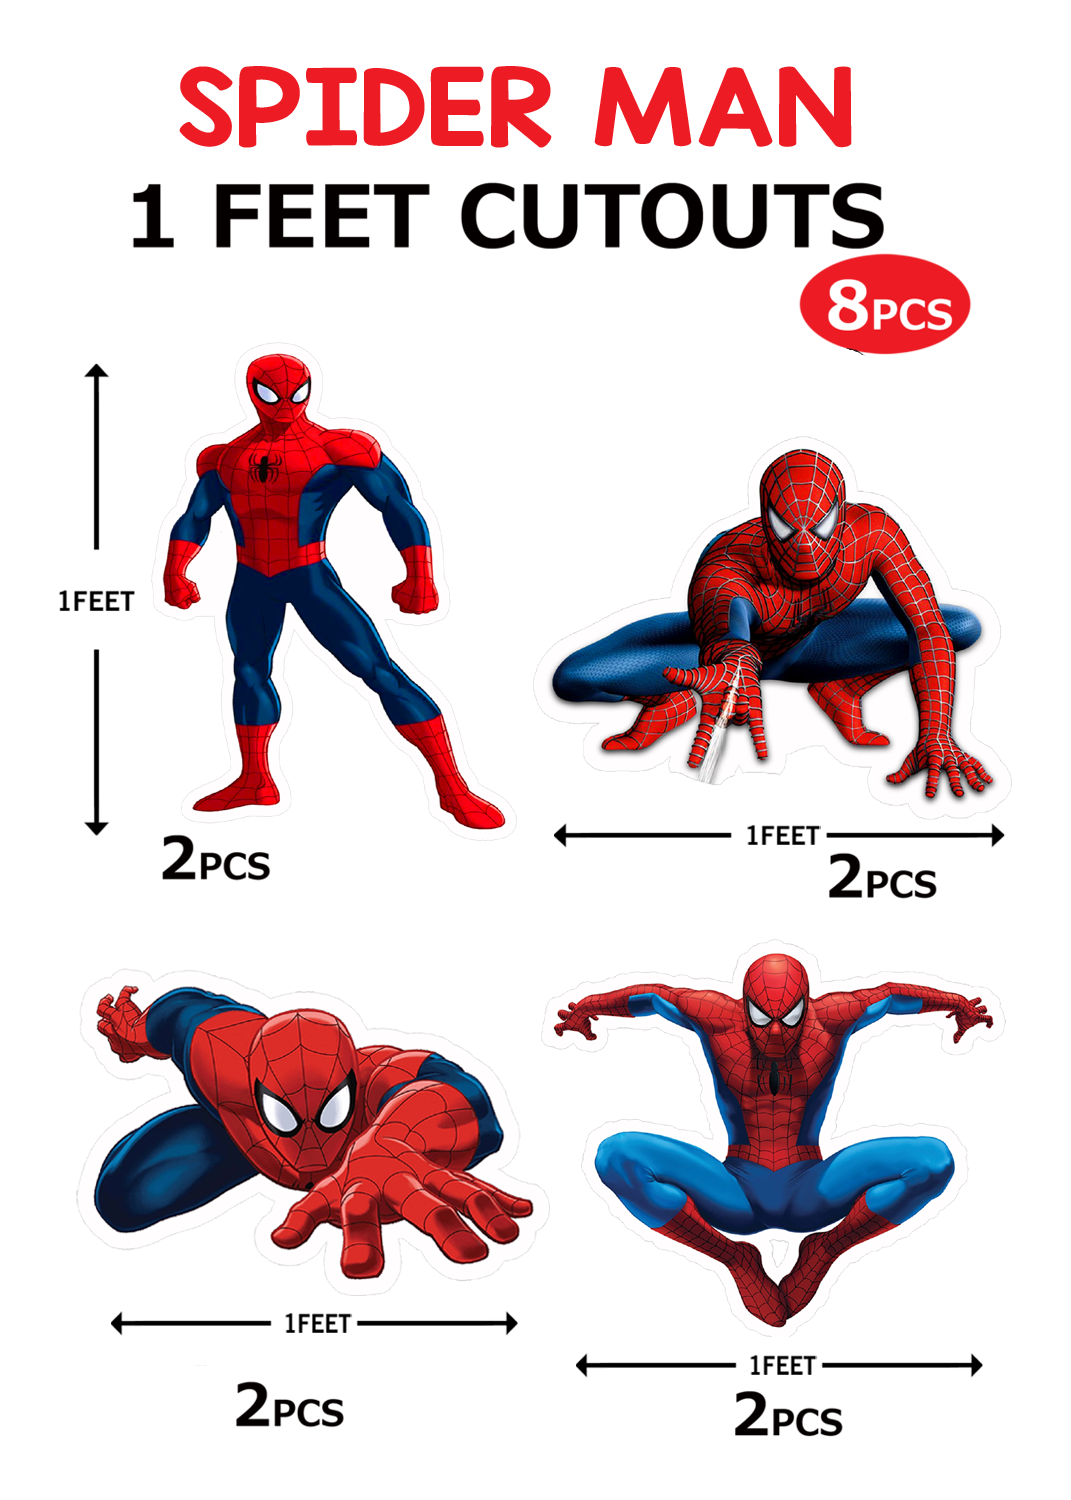 SpiderMan Cutouts (1ft) - 8 Pcs